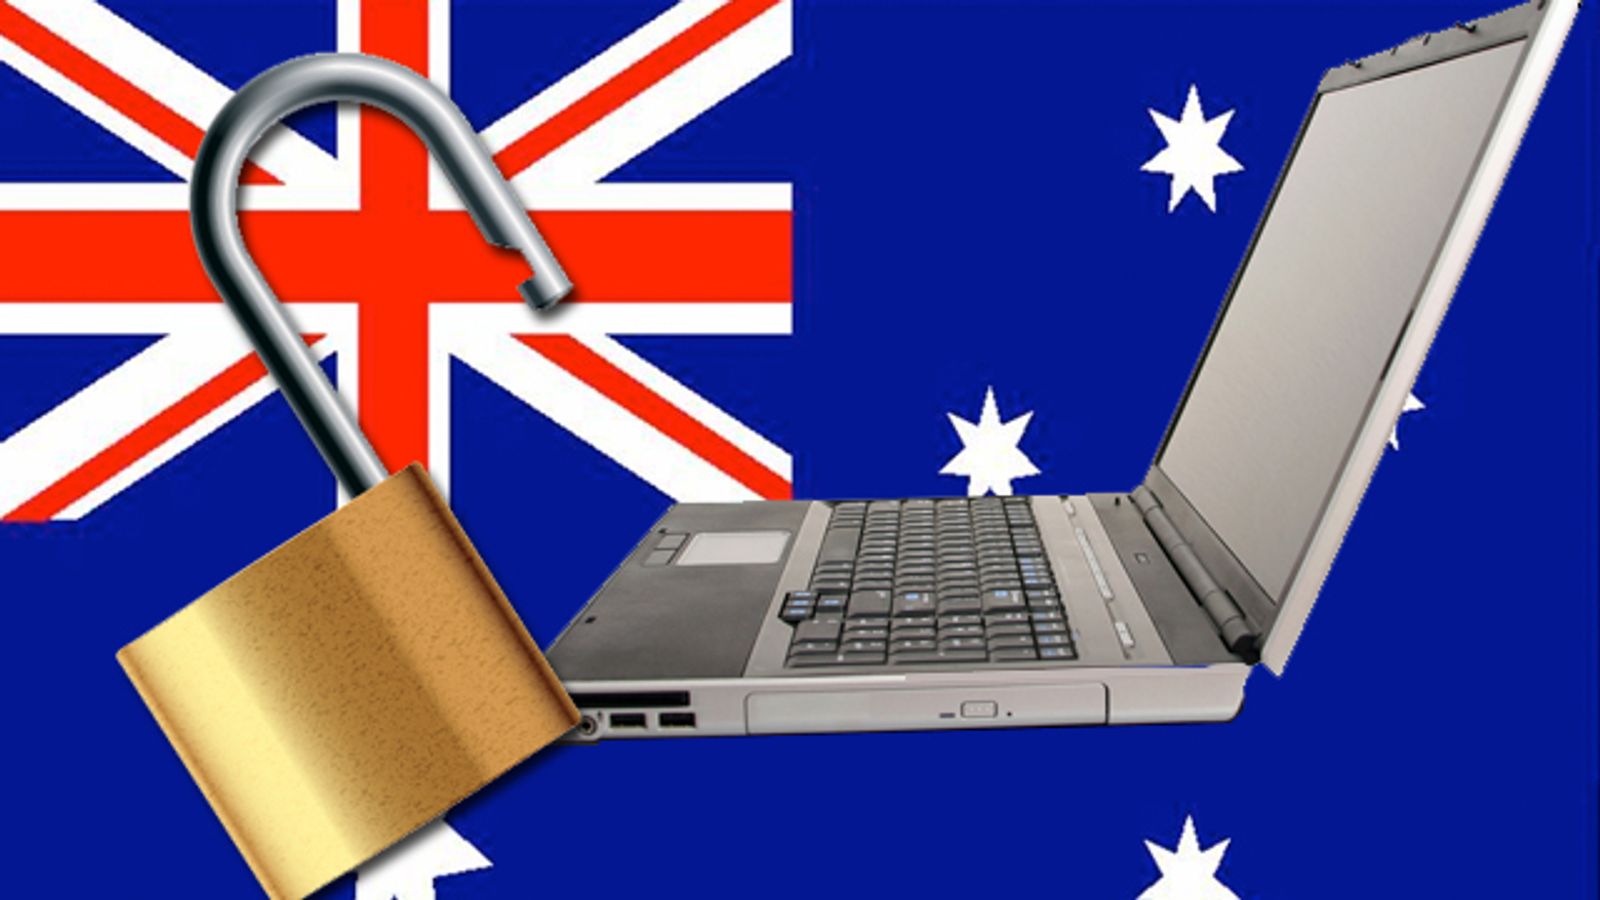 Aussie Internet Filtering Plans Shot Down